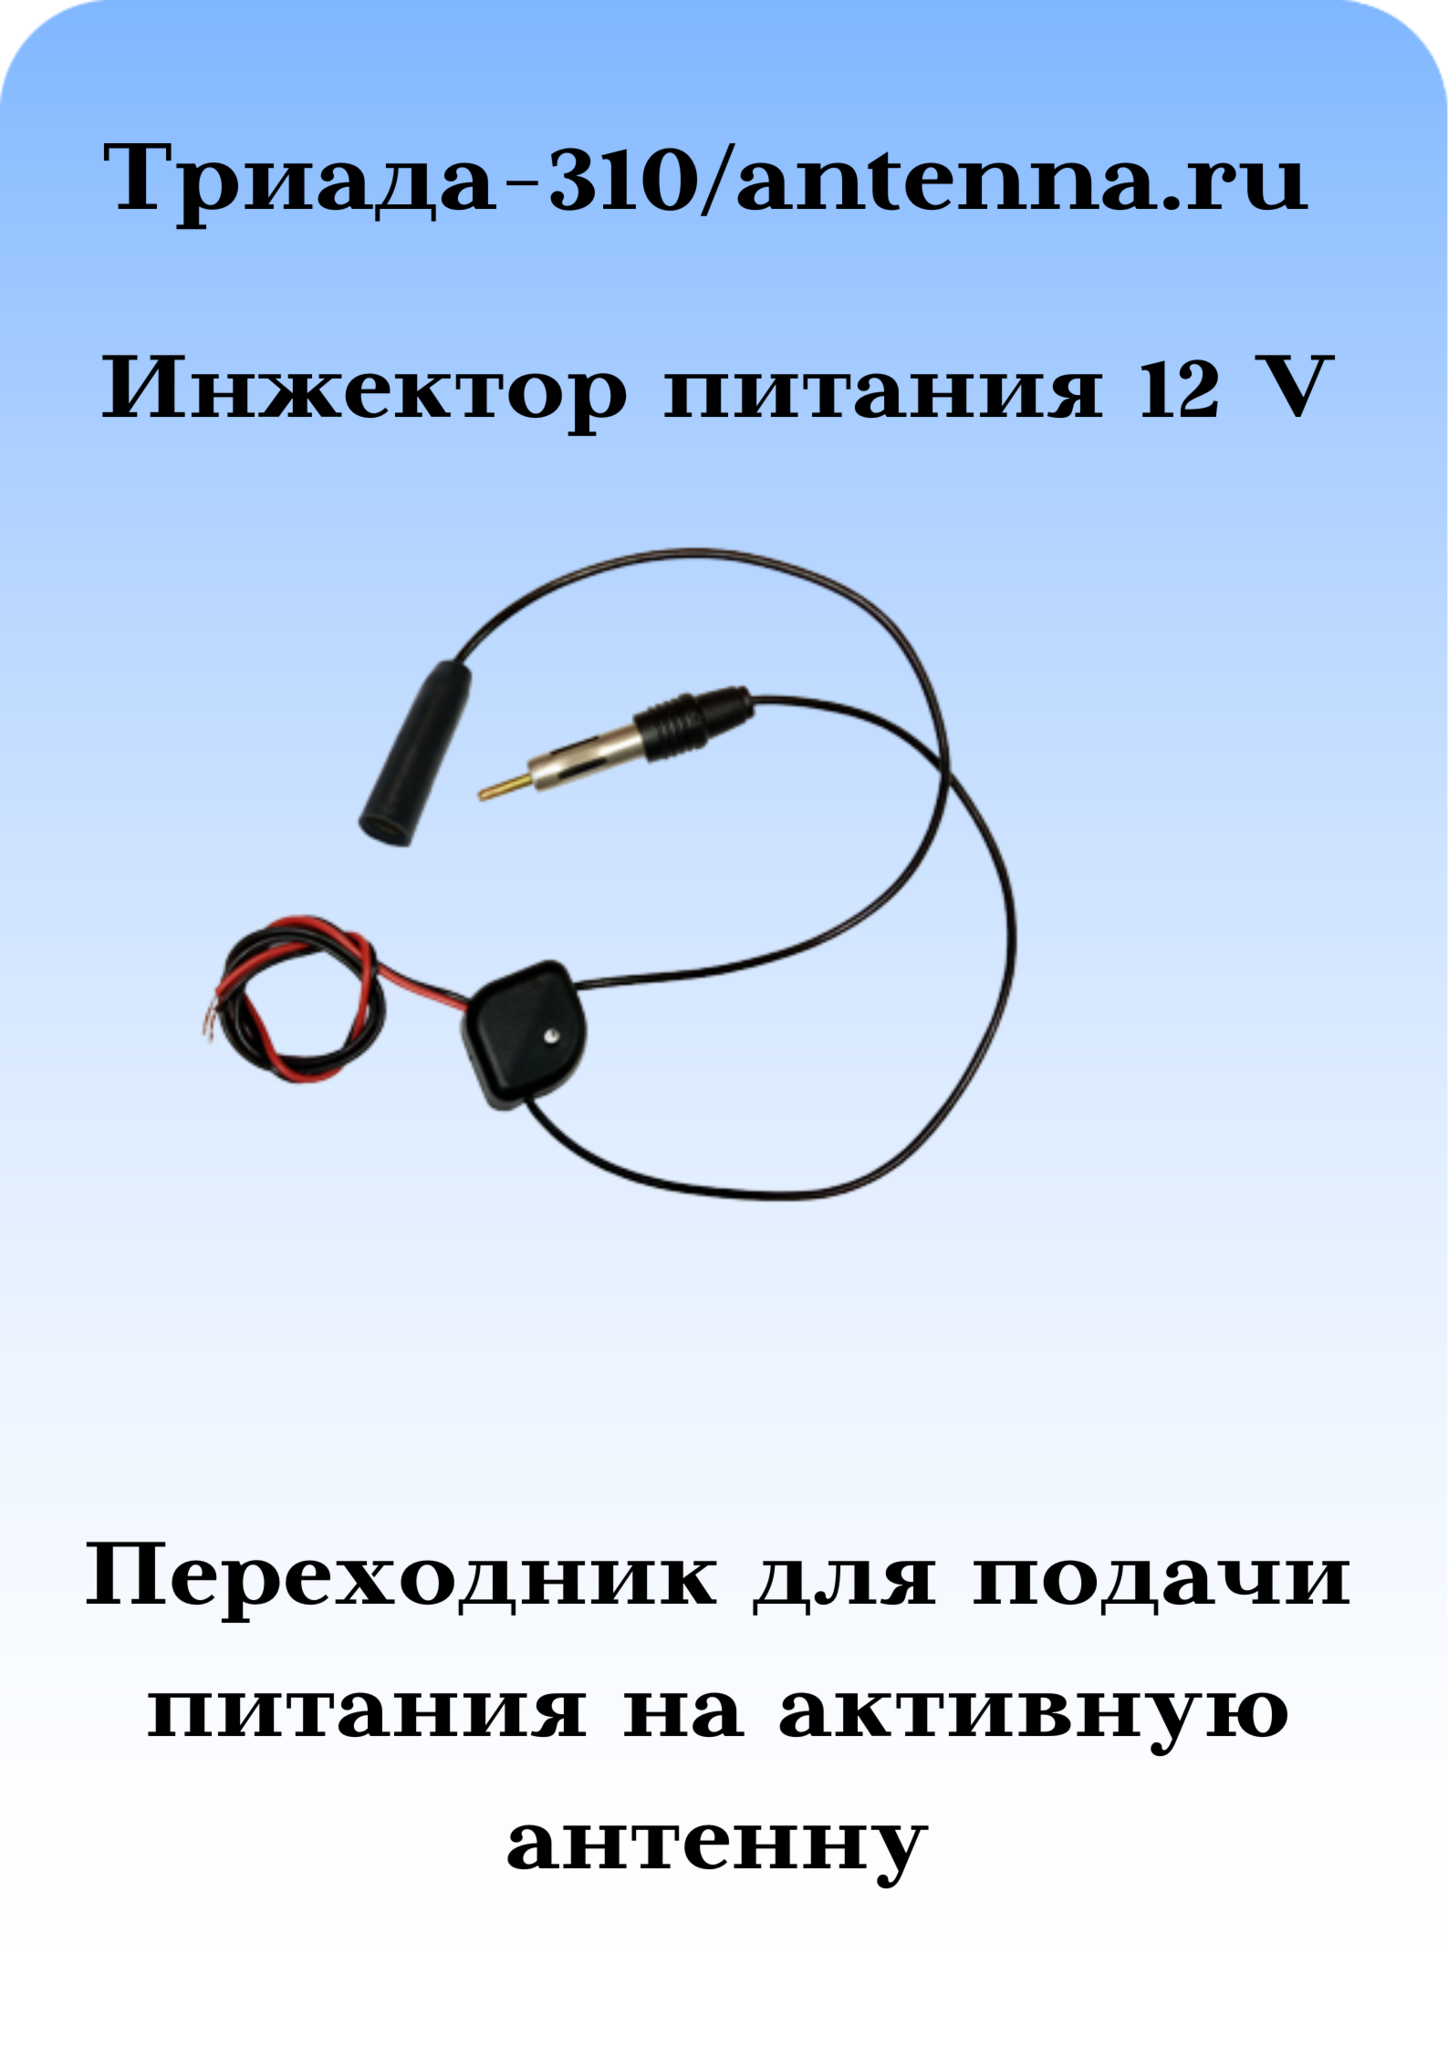 Инжектор питания 12 вольт Триада-310/antenna.ru  для подачи питания на активную автомобильную радиоантенну